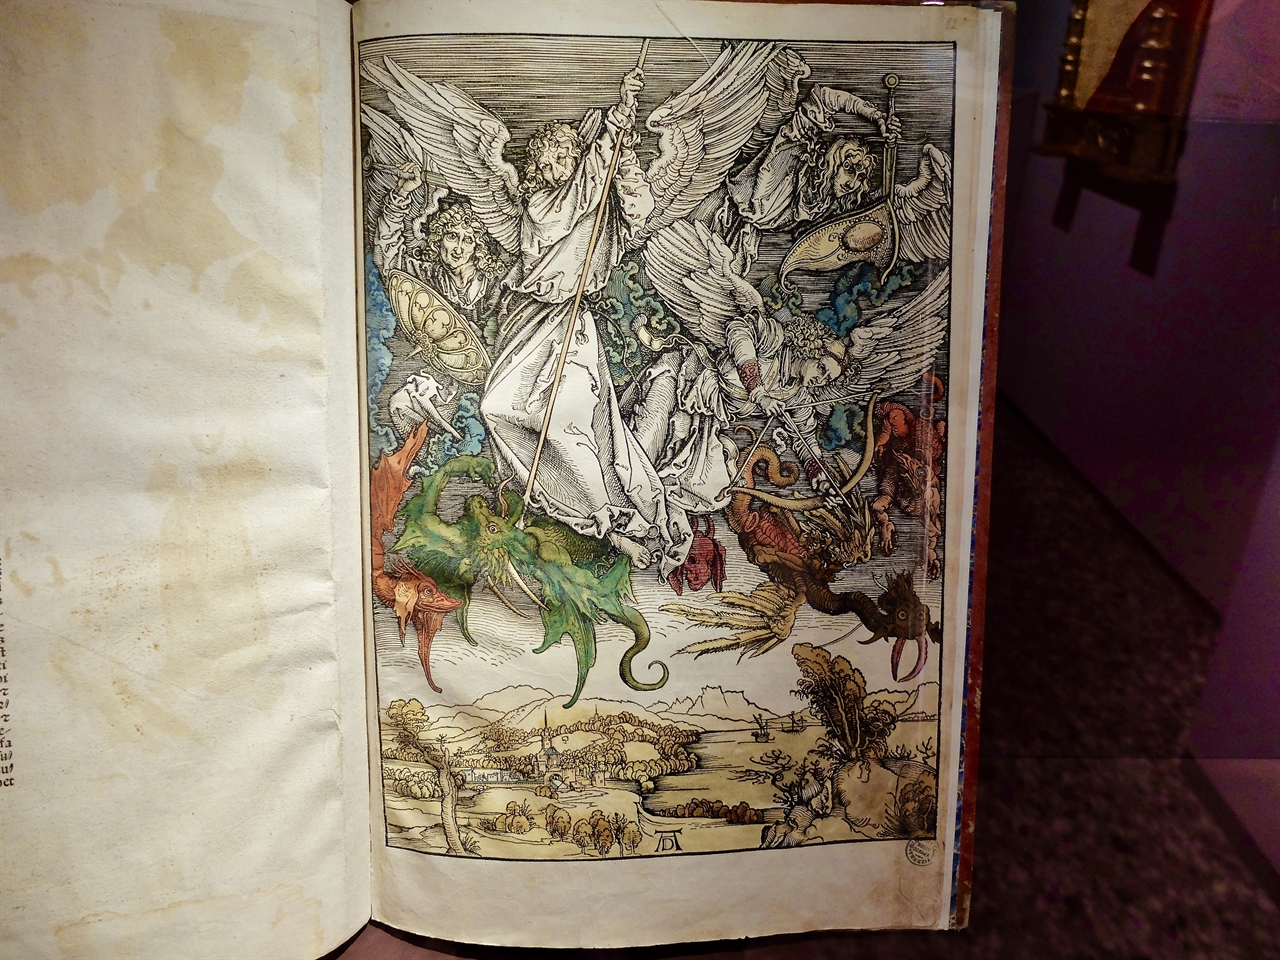 알브레히트 뒤러, ‘하늘에서의 싸움 ? 용과 싸우는 성 미카엘’, 베네치아 코레르 박물관. 성경책의 삽화로 요한계시록의 한 장면을 묘사한 목판화입니다. 